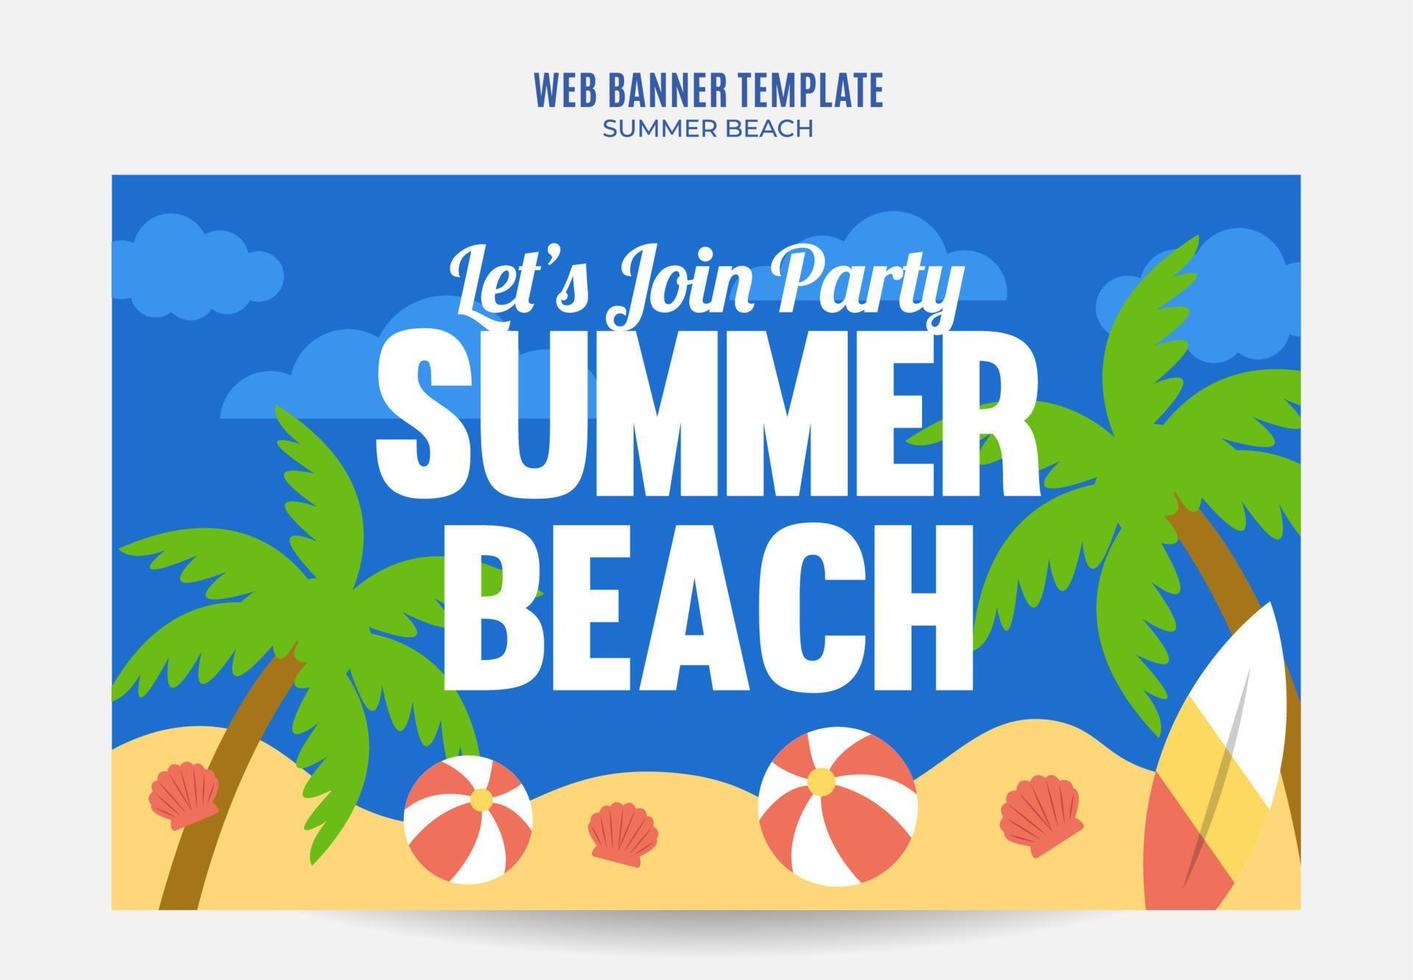 Sommertag - Strandparty-Webbanner für Social-Media-Poster, Banner, Weltraumbereich und Hintergrund vektor